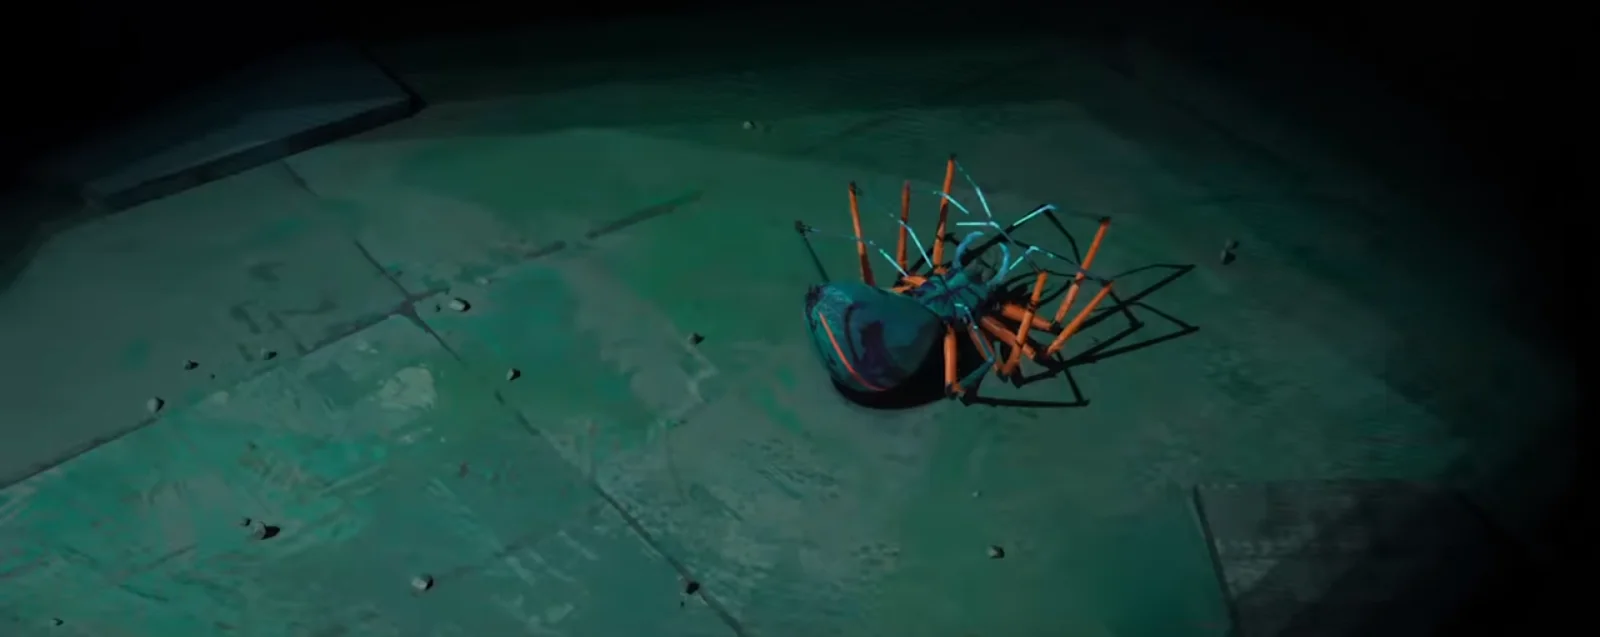 Что показали в трейлере Spider-Man: Into the Spider-Verse. Зеленый гоблин, Гвен-паук и Кингпин? - фото 13